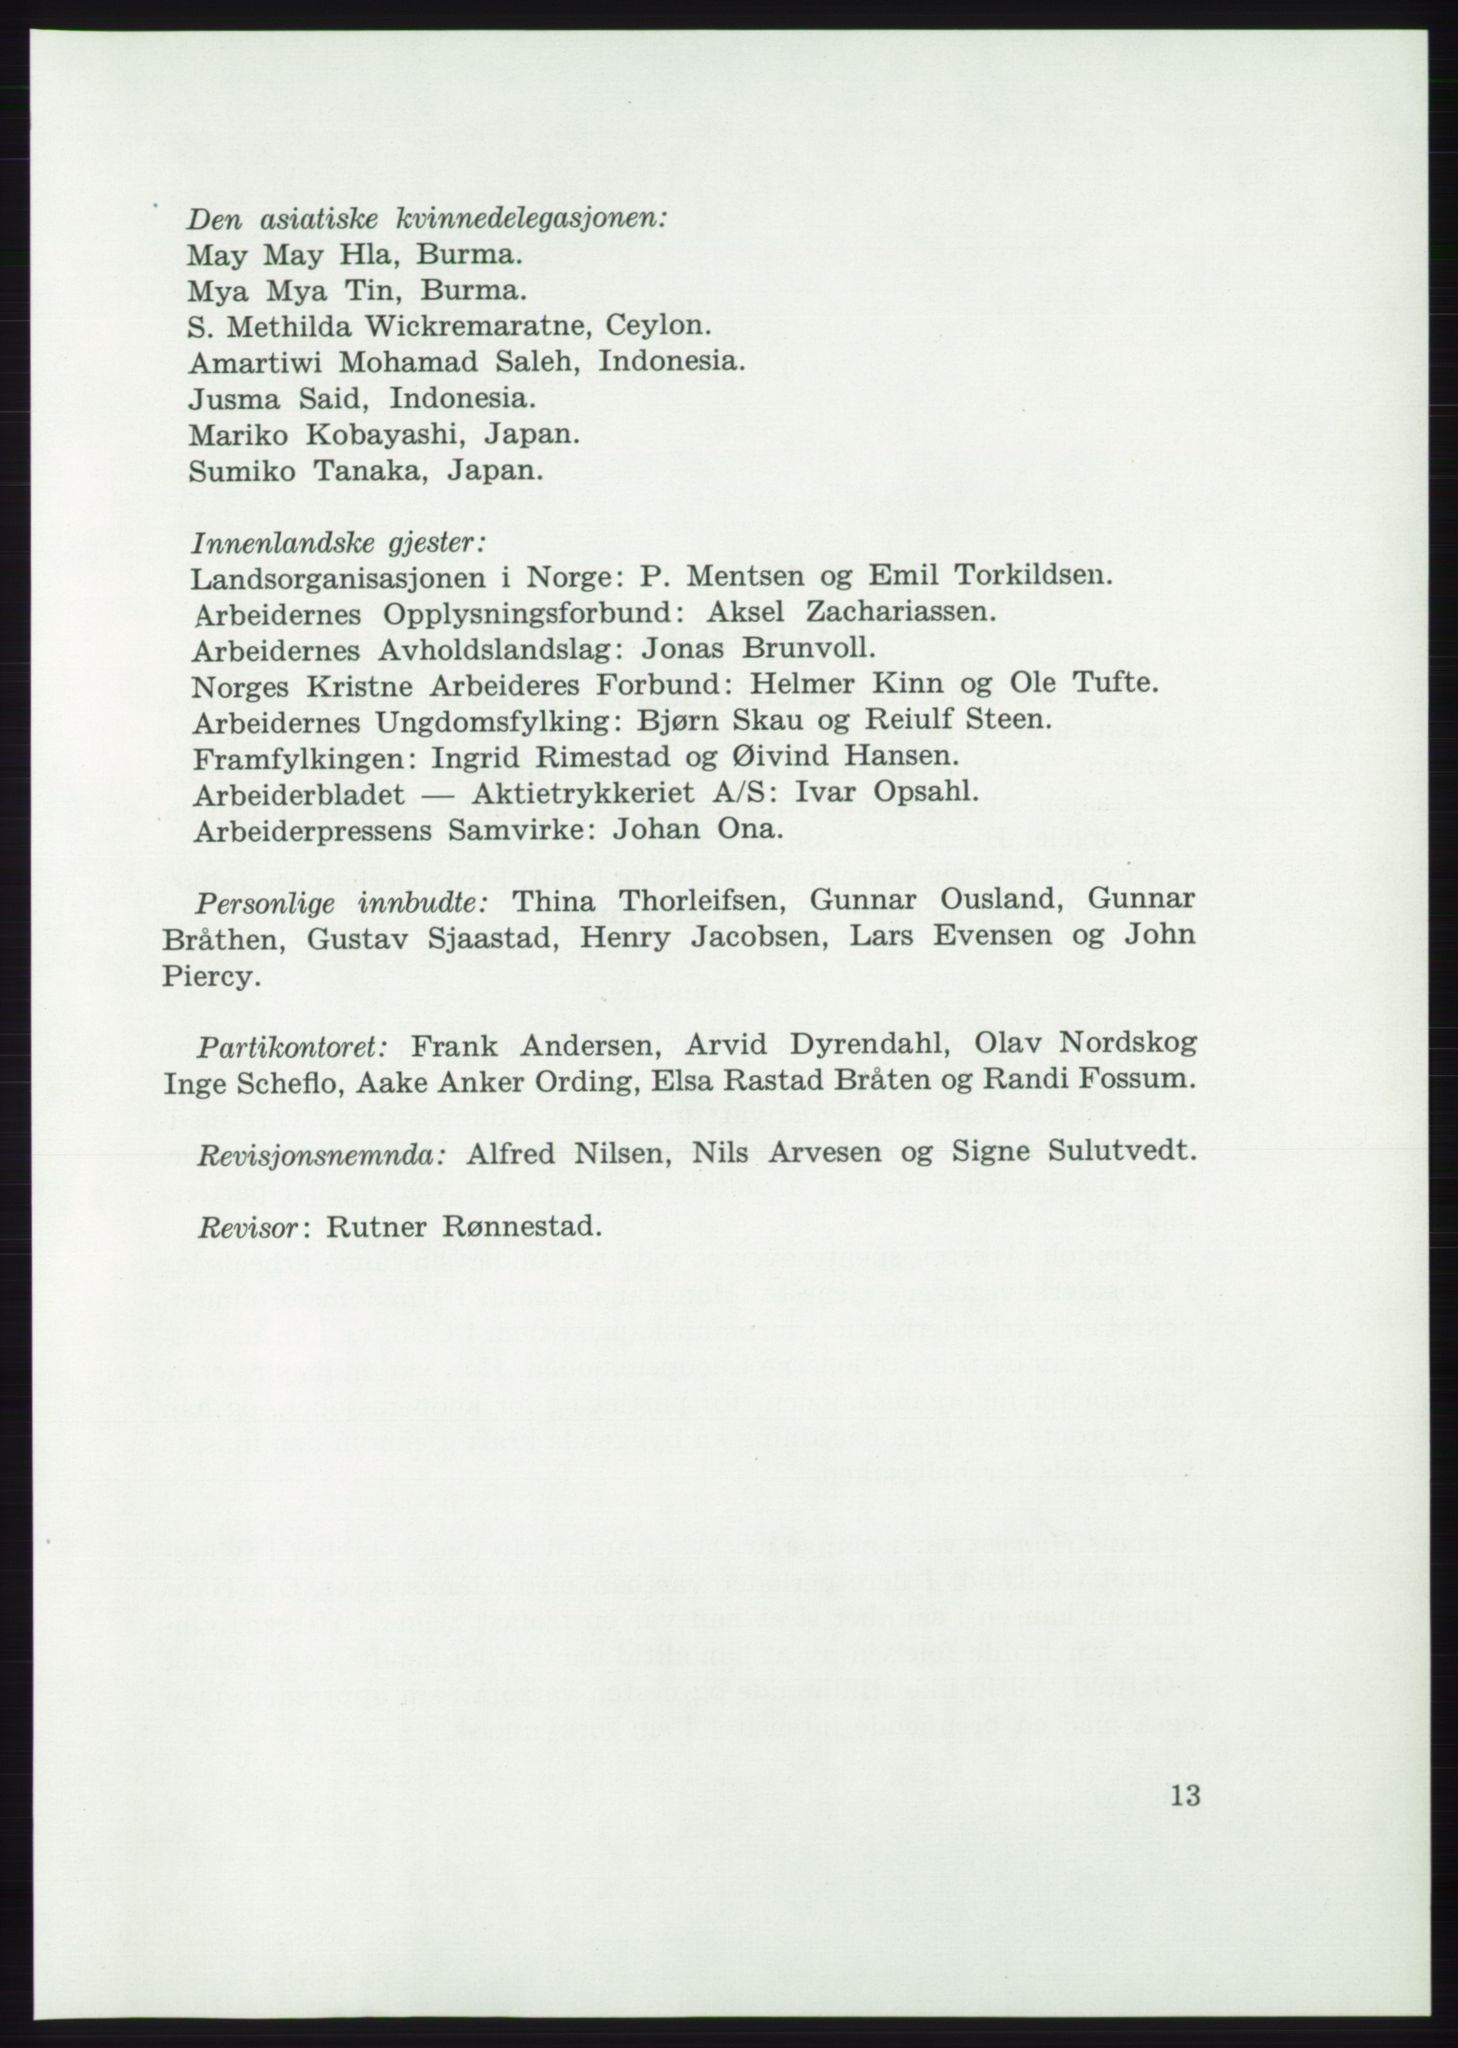 Det norske Arbeiderparti - publikasjoner, AAB/-/-/-: Protokoll over forhandlingene på det 37. ordinære landsmøte 7.-9. mai 1959 i Oslo, 1959, s. 13